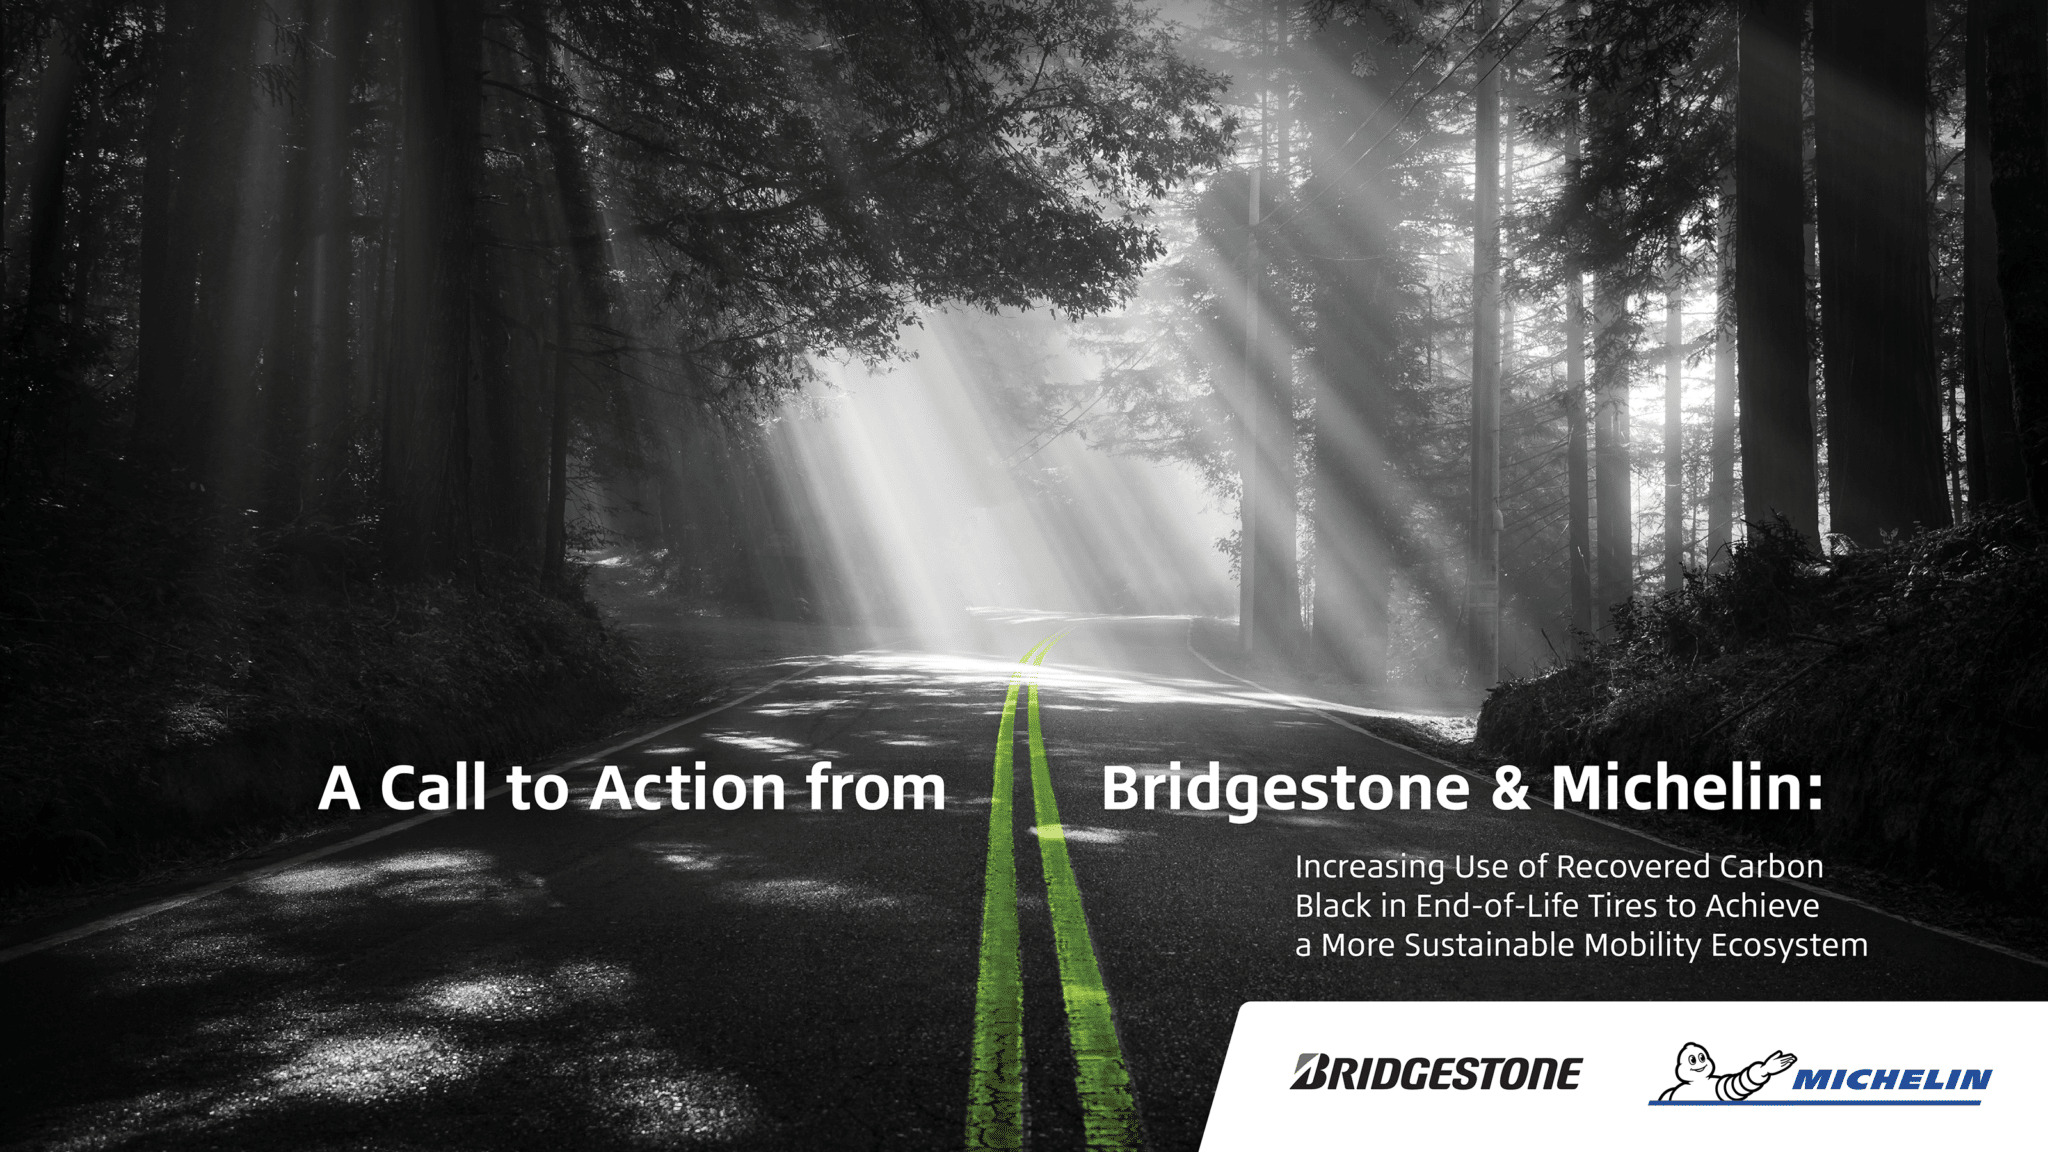 Bridgestone en Michelin praten samen over de rol van teruggewonnen carbon black in de opbouw van een duurzamer mobiliteitsecosysteem